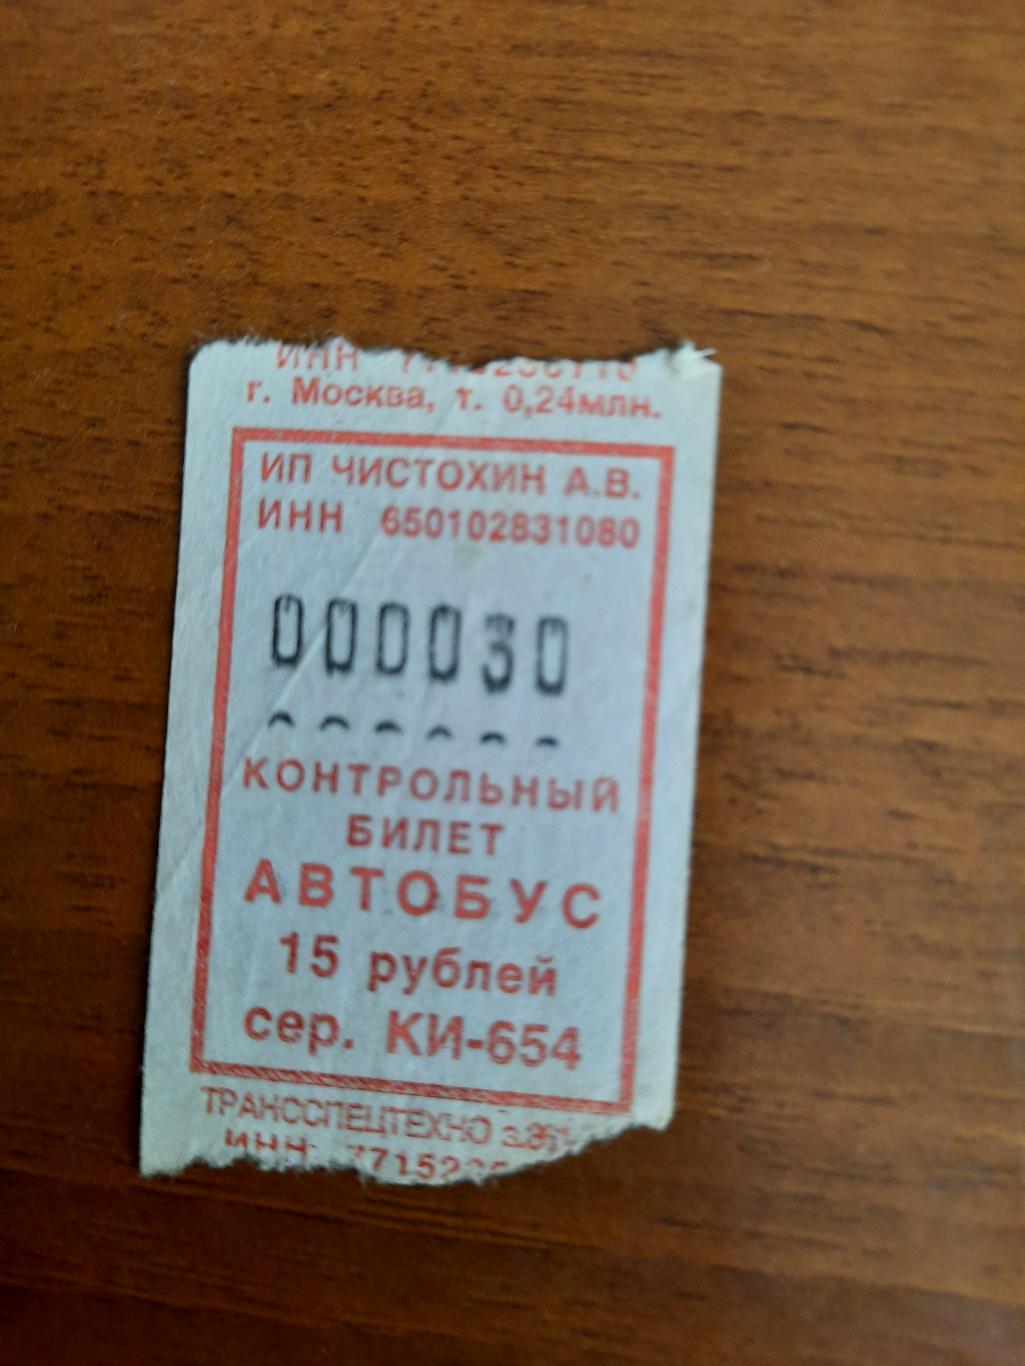 Автобусный билет с интересным номером 000030